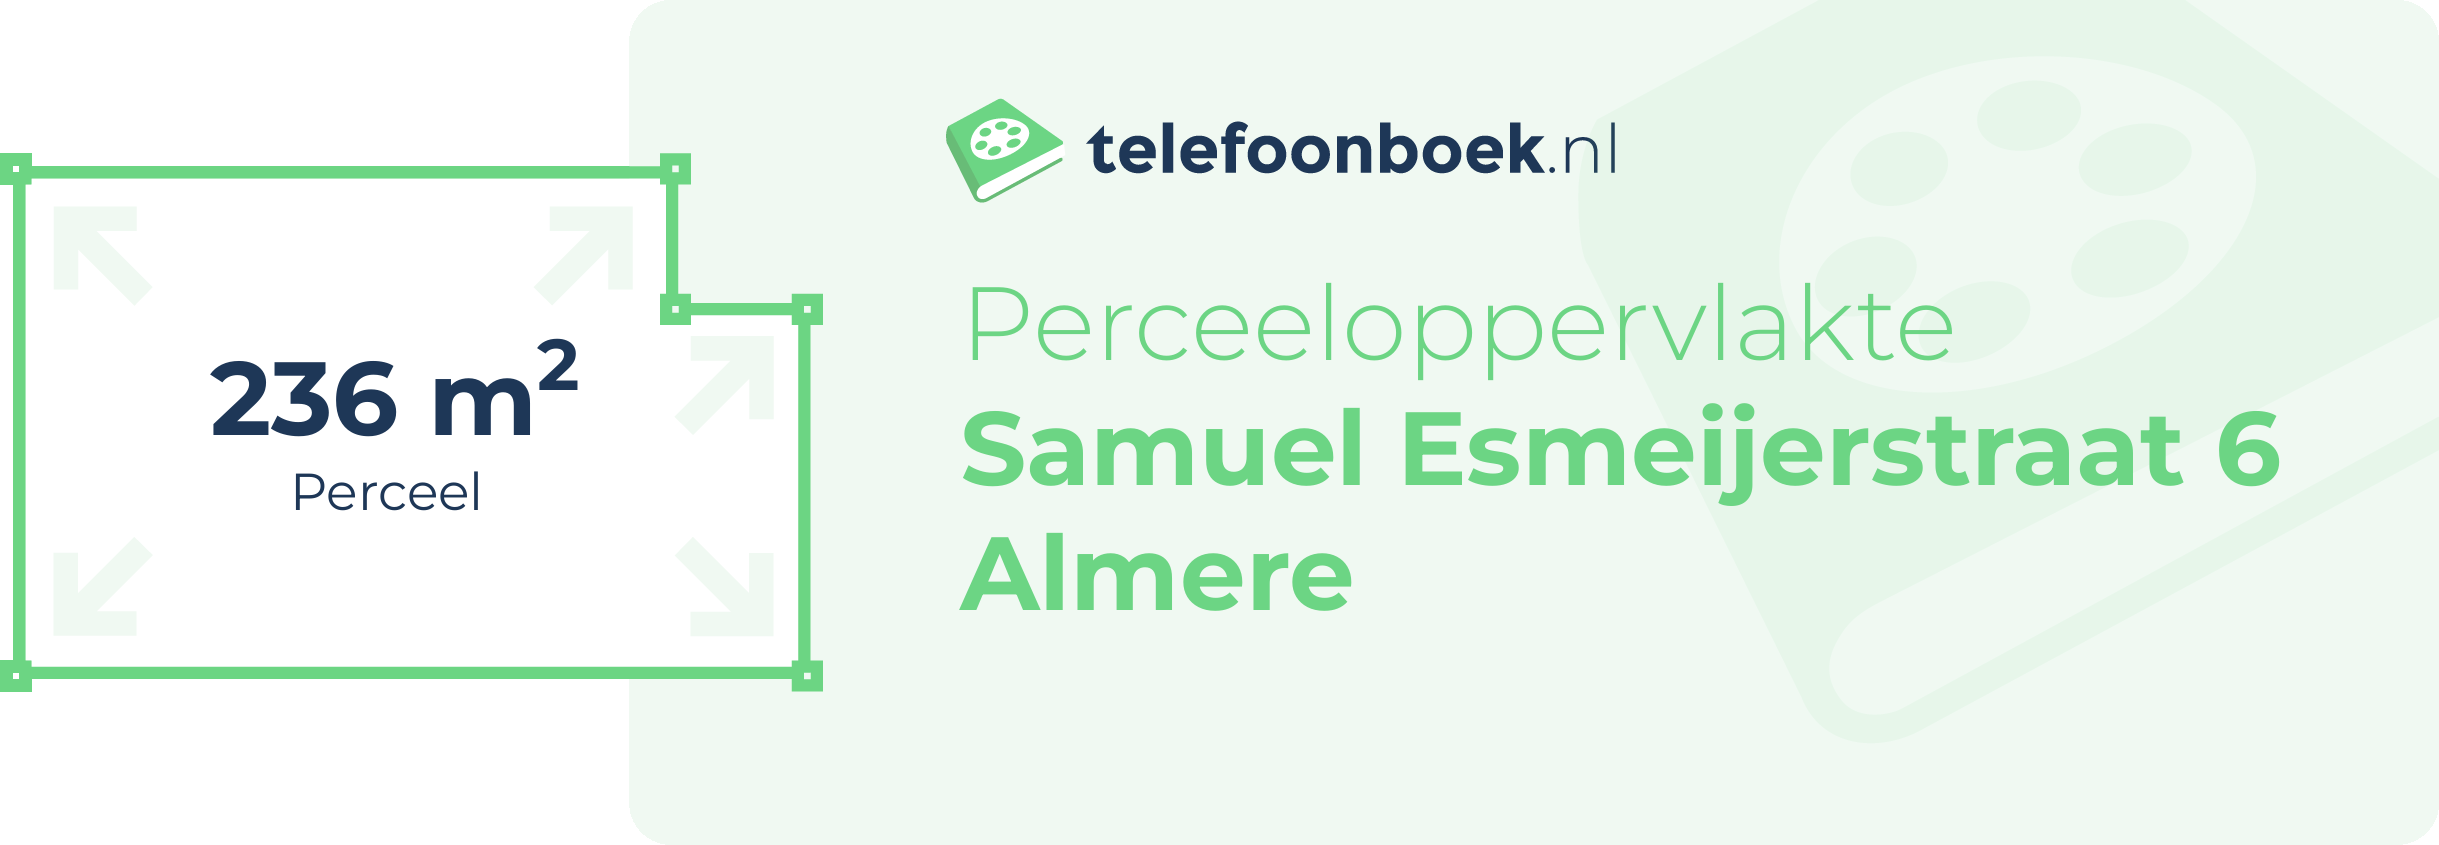 Perceeloppervlakte Samuel Esmeijerstraat 6 Almere